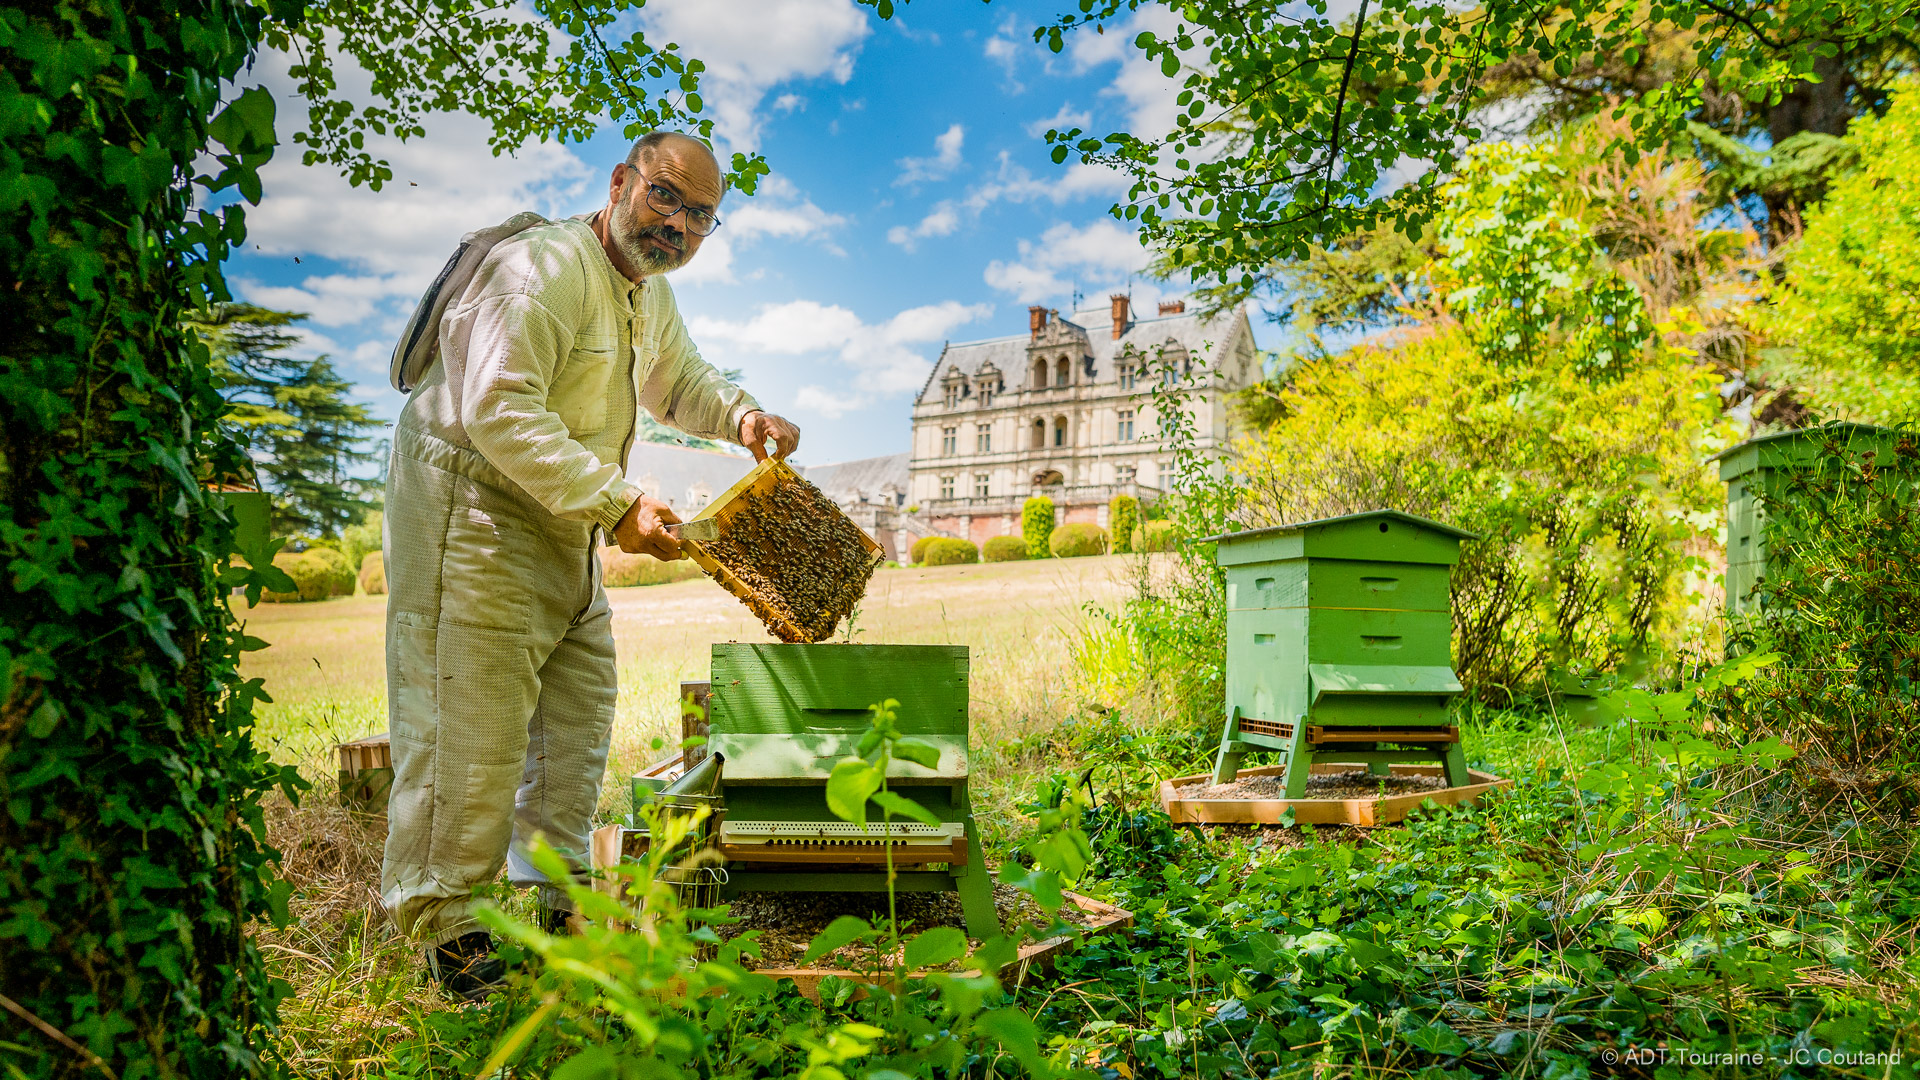 Miel en rayon, Le Château Blanc, Apiculture Inc.